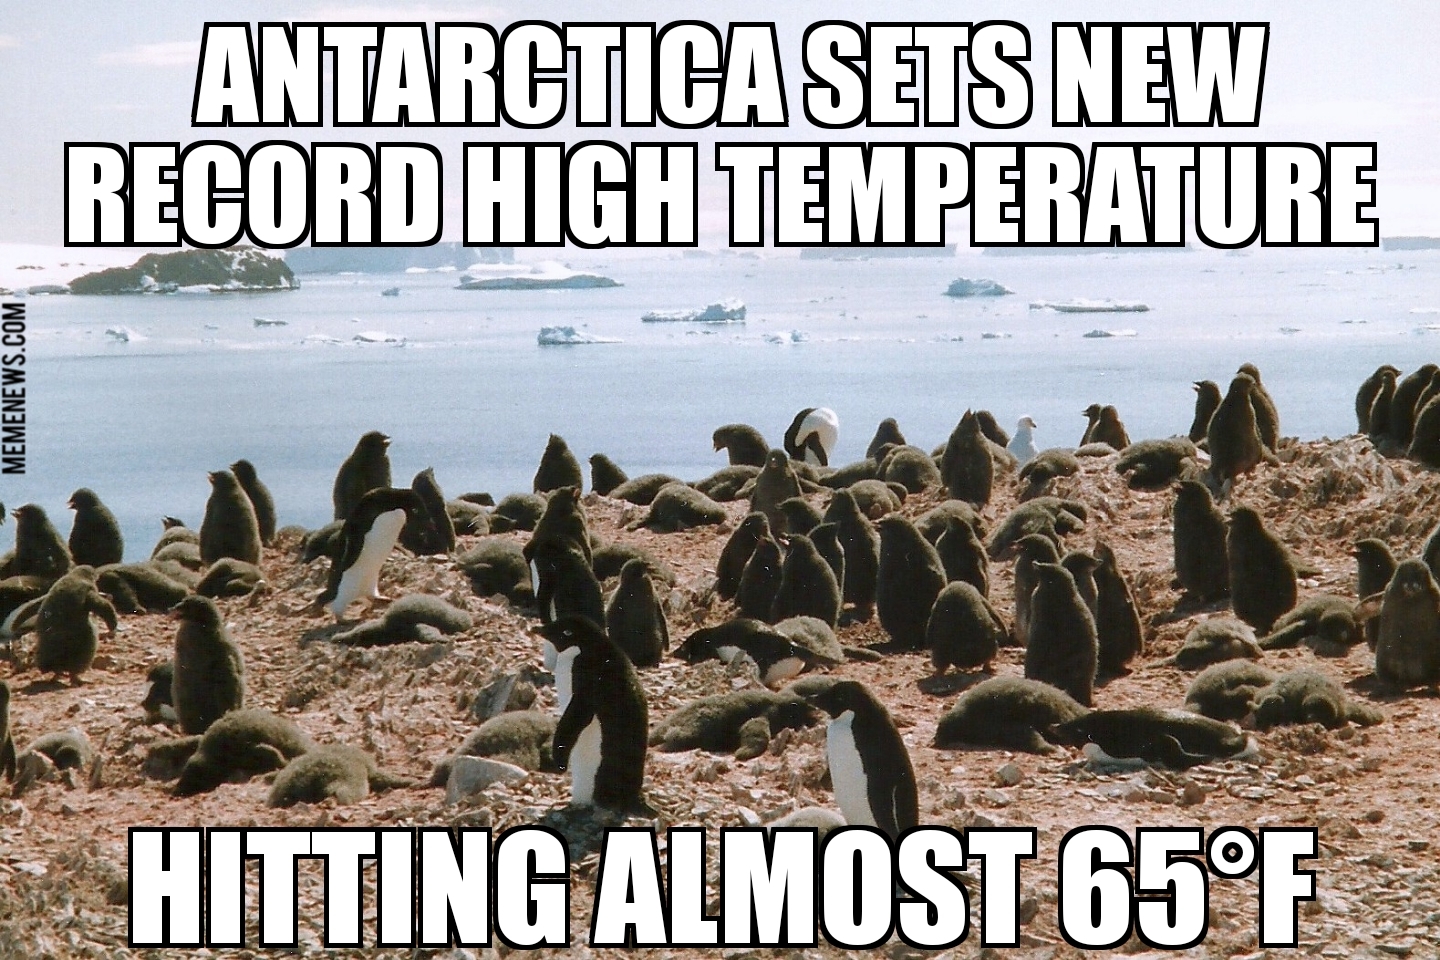 Antarctica sets new record high temperature